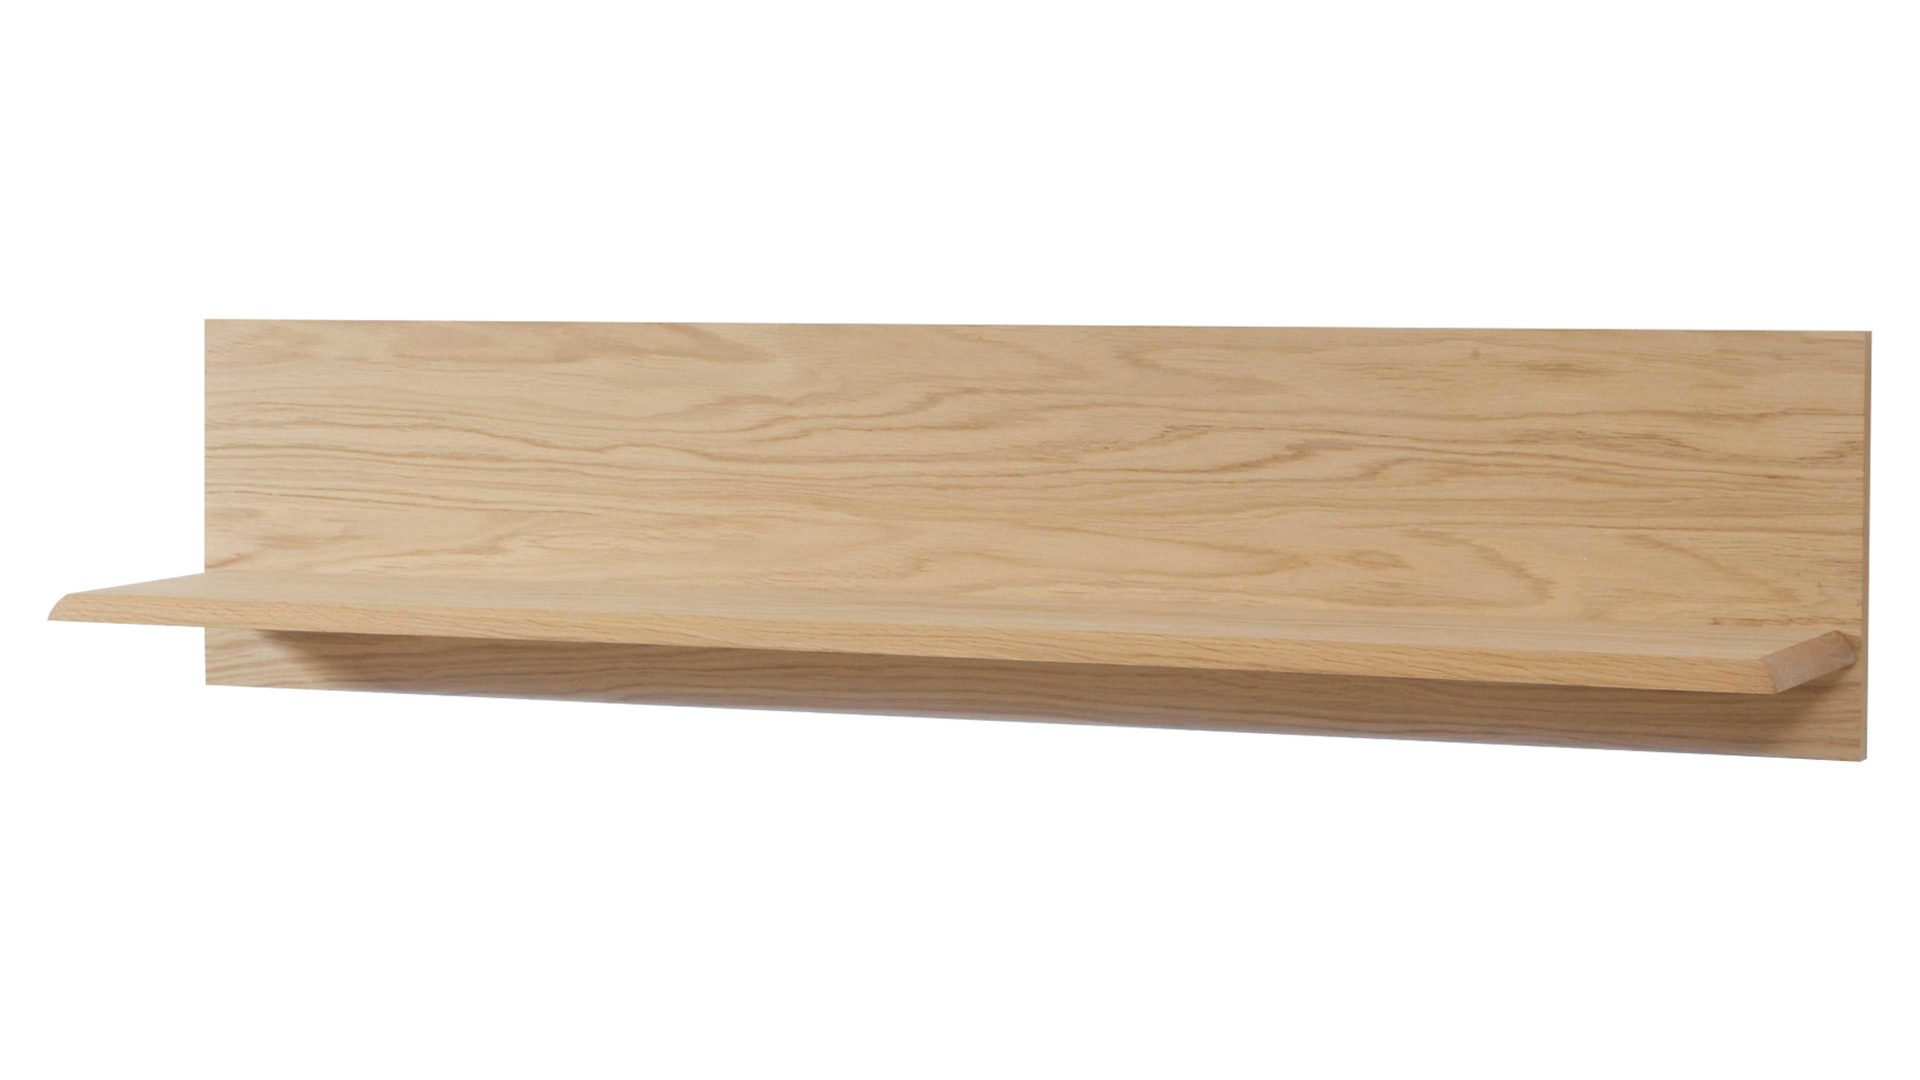 Wandregal Mca furniture aus Holz in Holzfarben Hell Wohnprogramm Sena - Wandboard mit Rückwand Bianco geölte Eiche – Länge ca. 110 cm